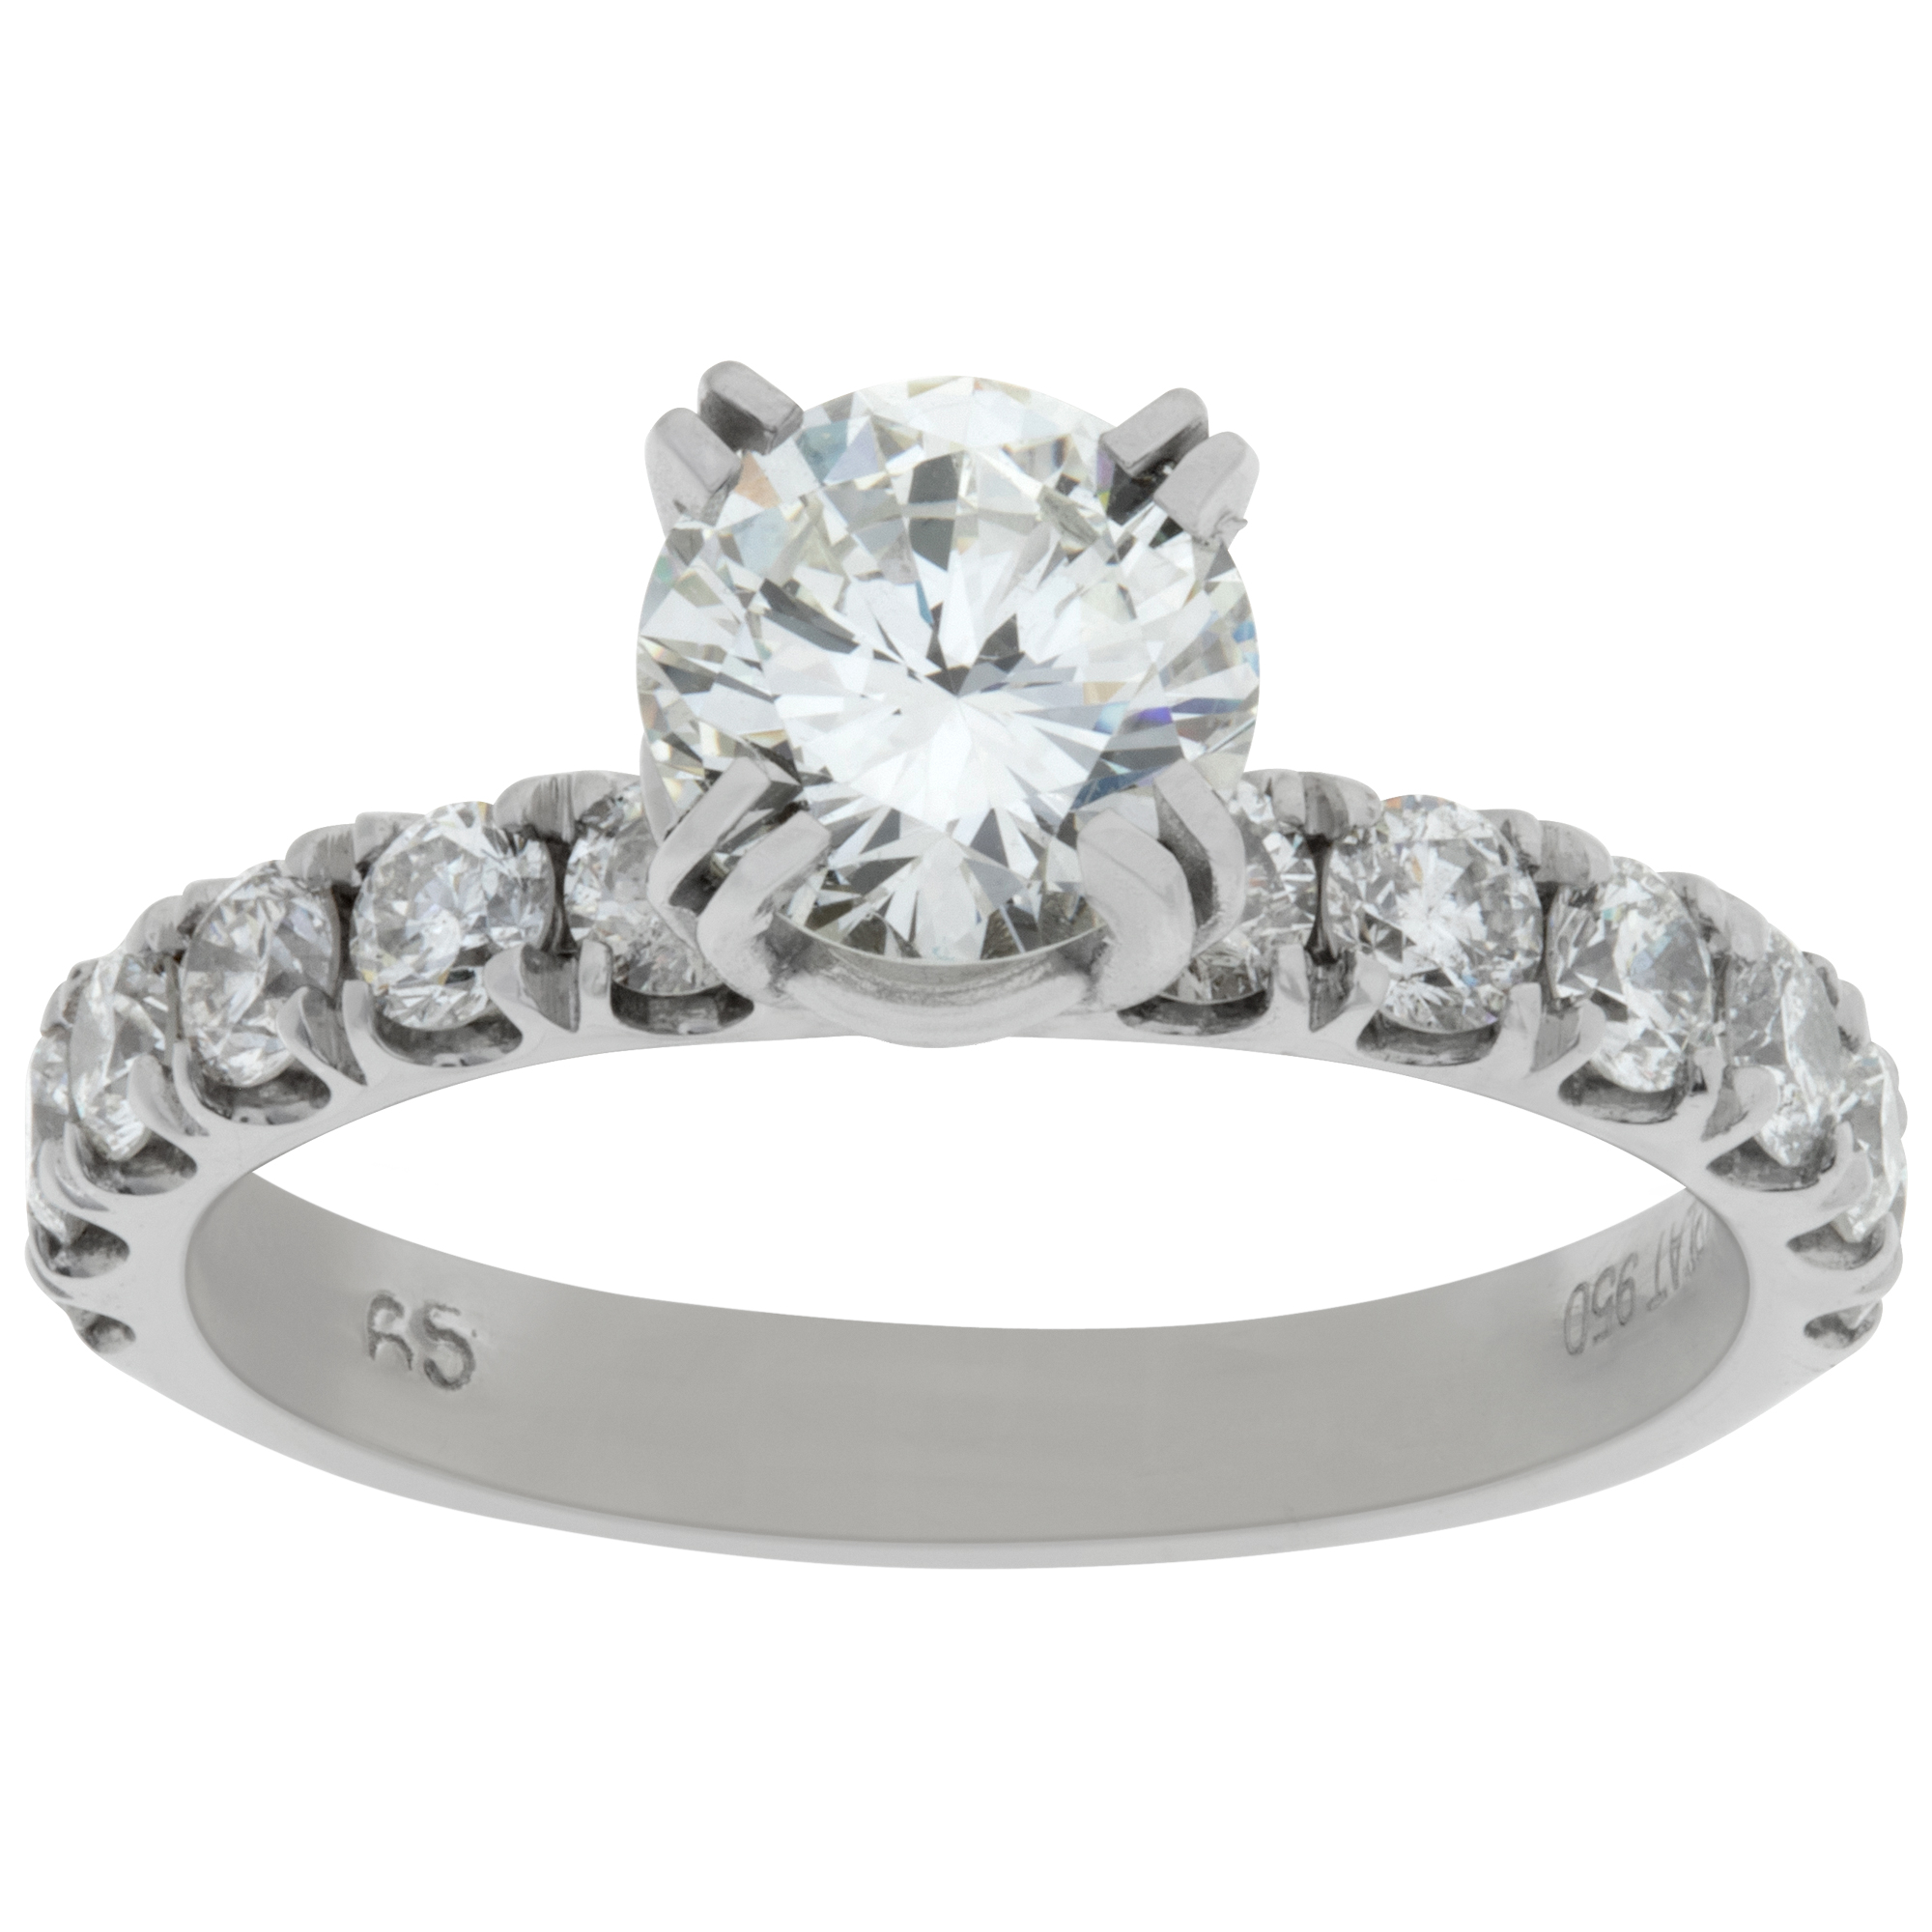 GIA certified round brilliant cut diamond 1.07 carat (I color, VS2 clarity) ring set in platinum